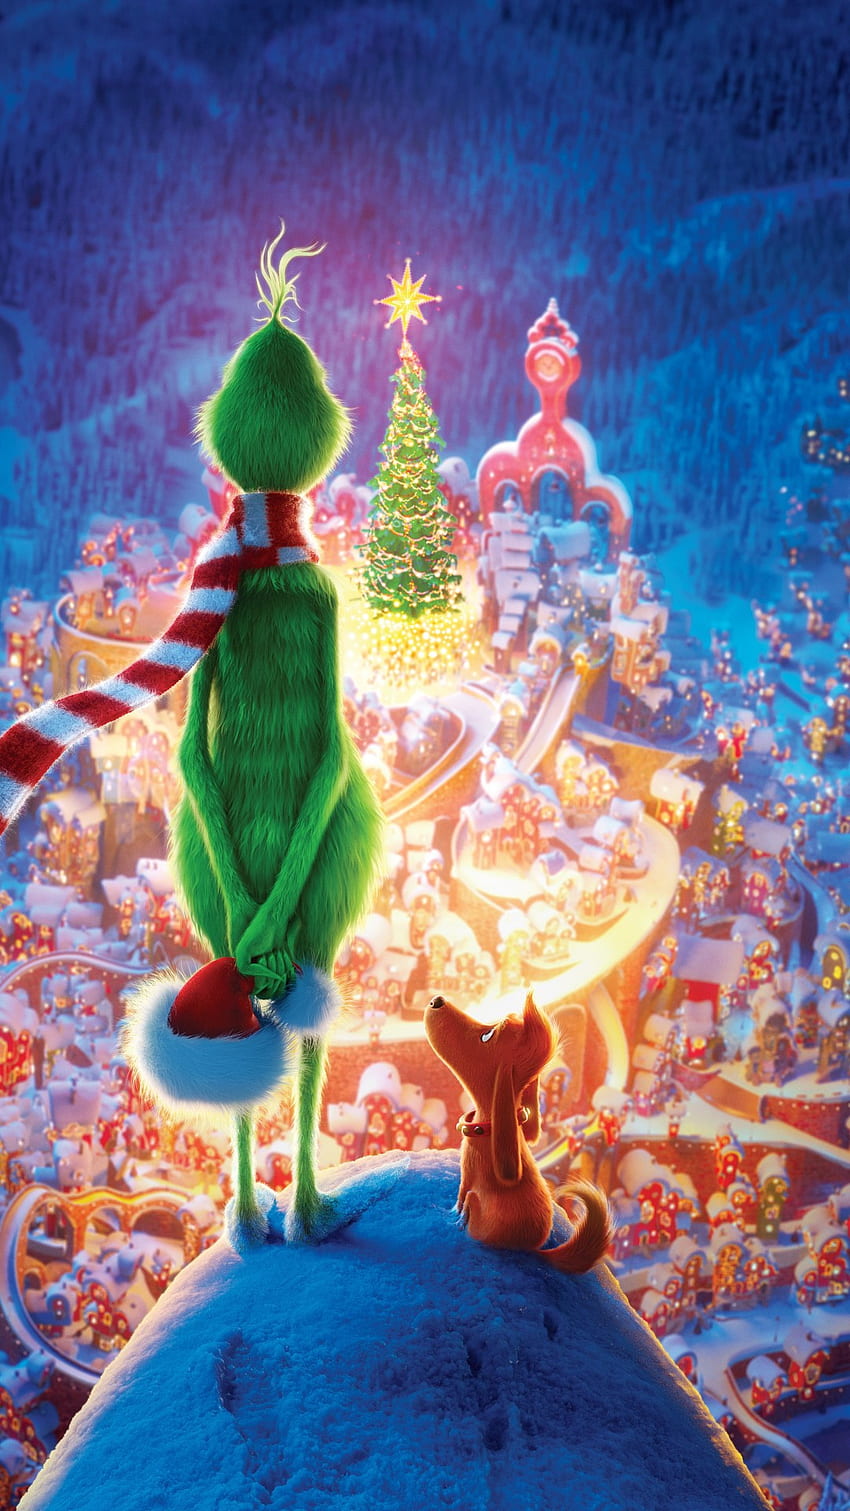 Đón mùa Giáng Sinh năm nay với những hình ảnh Grinch đầy muôn màu sắc và độc đáo. Hãy tạo không khí Noel bằng những đoạn video đáng yêu và đầy thú vị với bộ sưu tập những hình ảnh được chọn lọc kỹ lưỡng này.